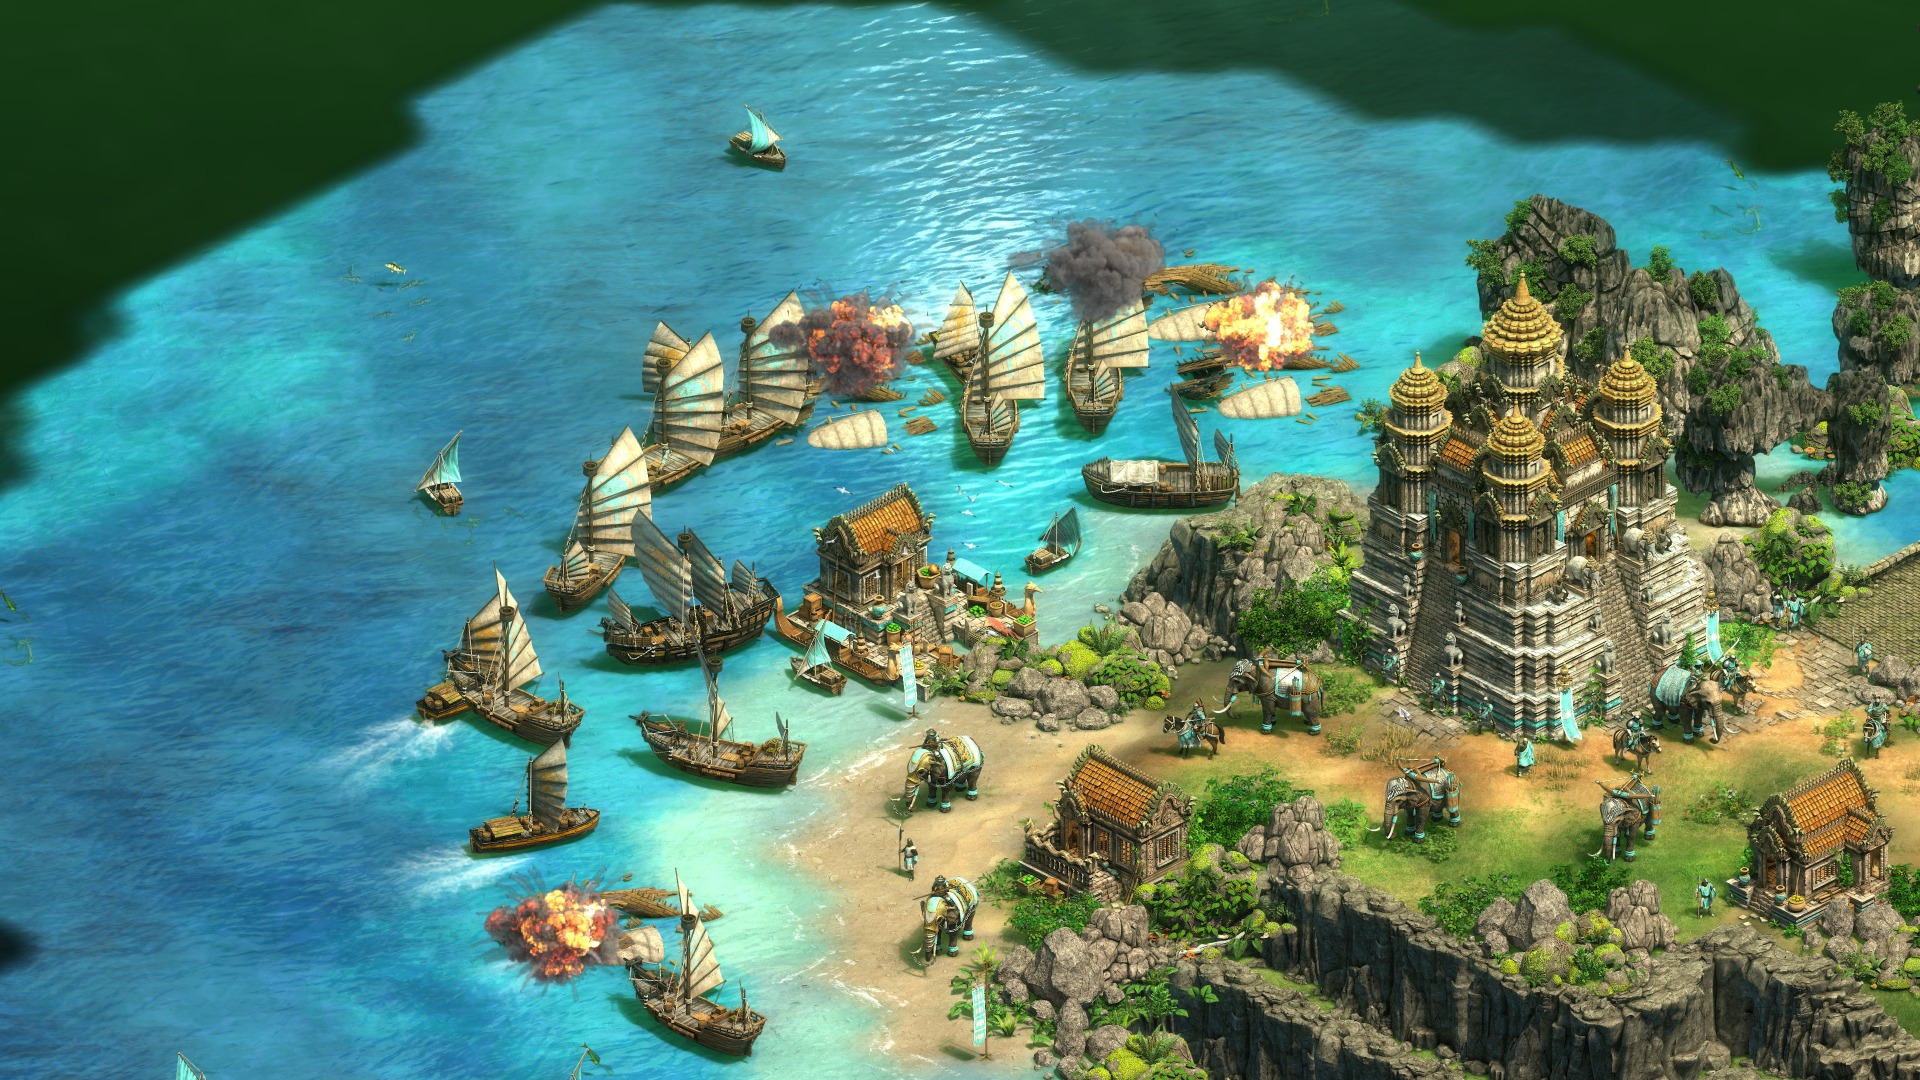 Age Of Empires Ii のアジア大会をマイクロソフトが開催へ 日本を含む8地域で年第1四半期より約1年にわたりトーナメントが実施予定